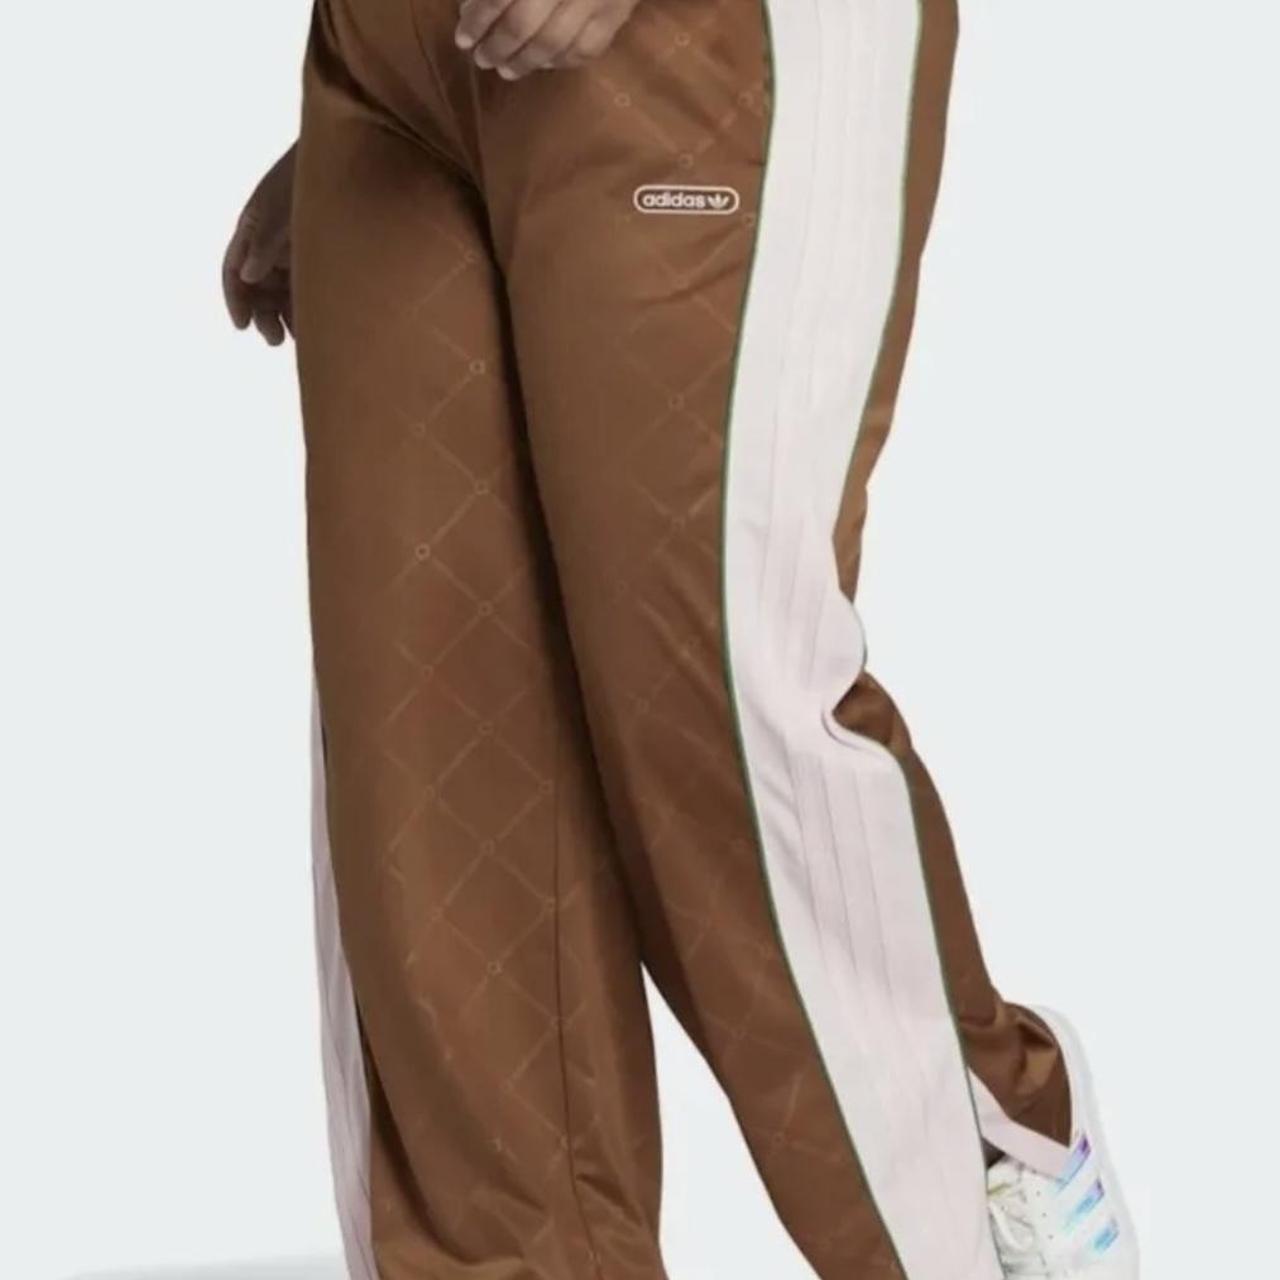 Adidas Women's Track Pants A monogram exudes pure - Depop